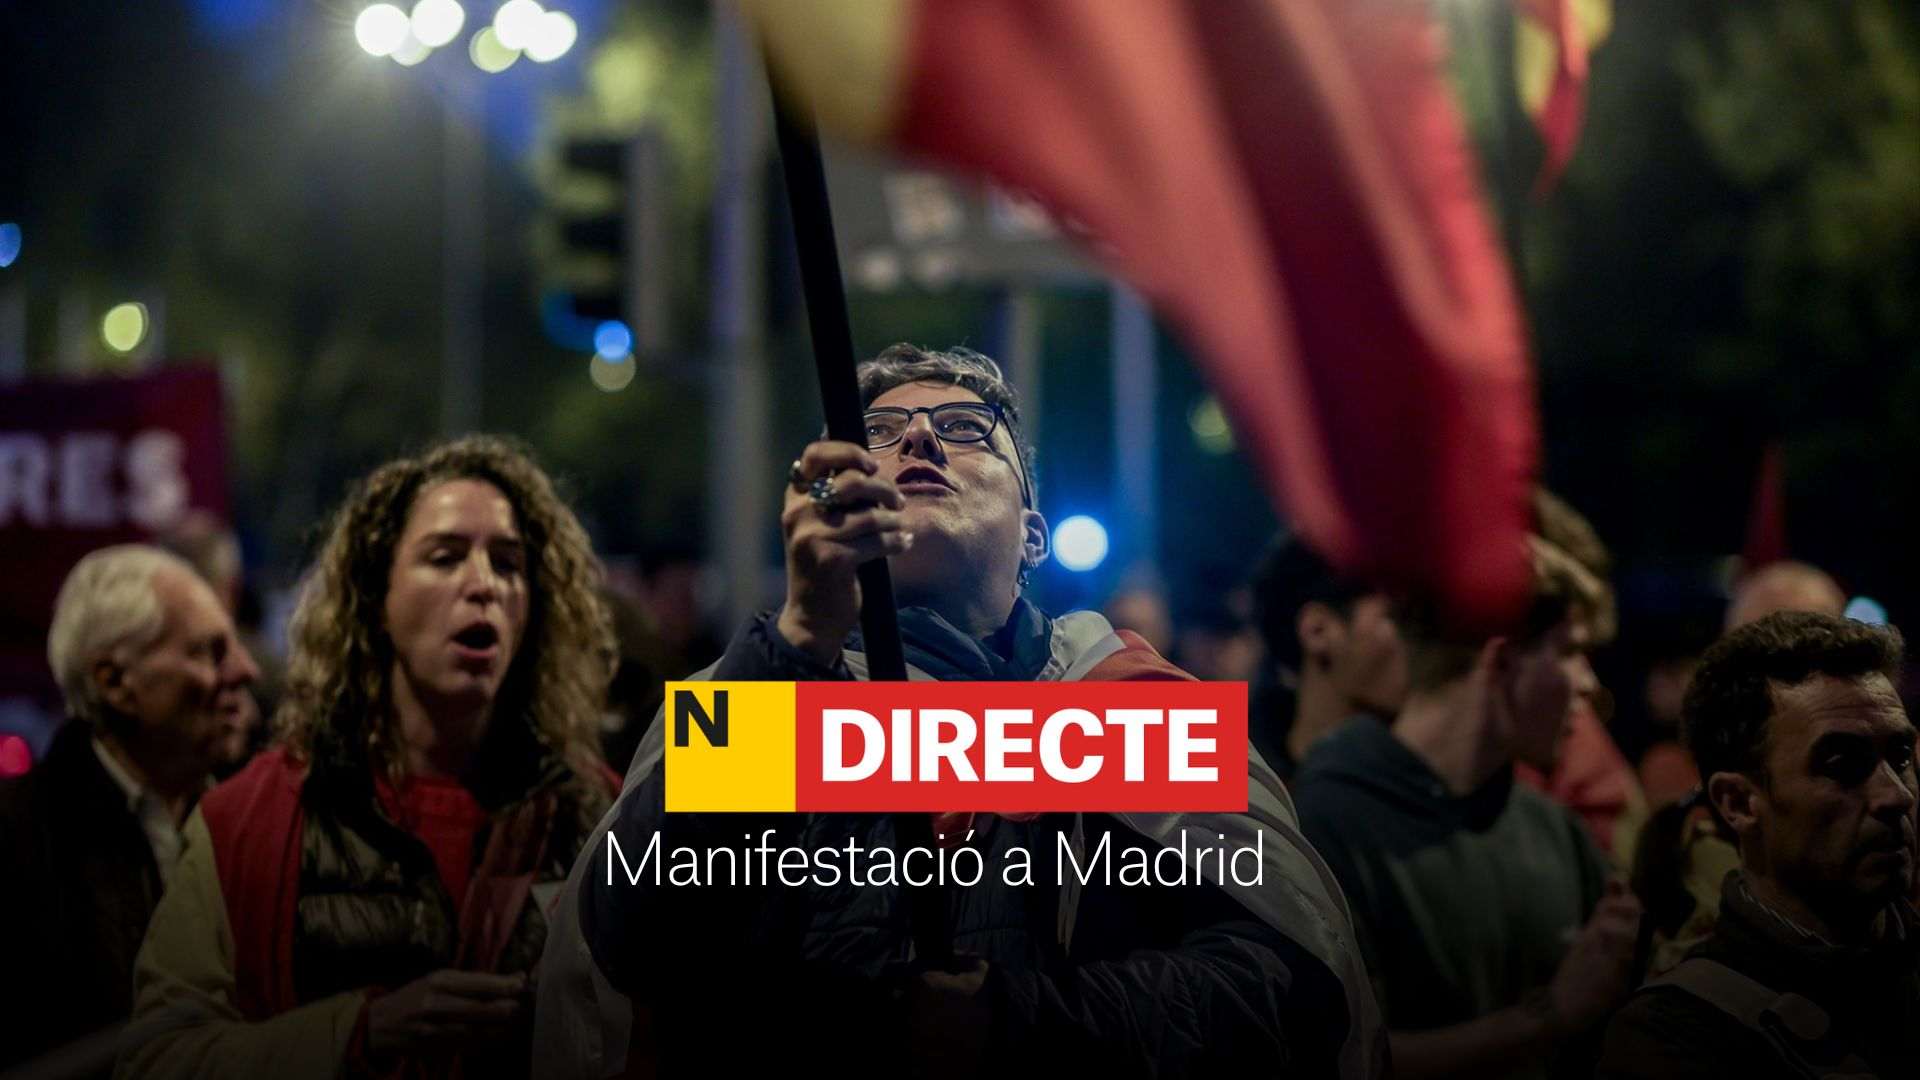 Manifestació a Madrid, DIRECTE | Última hora a Ferraz i càrregues policials